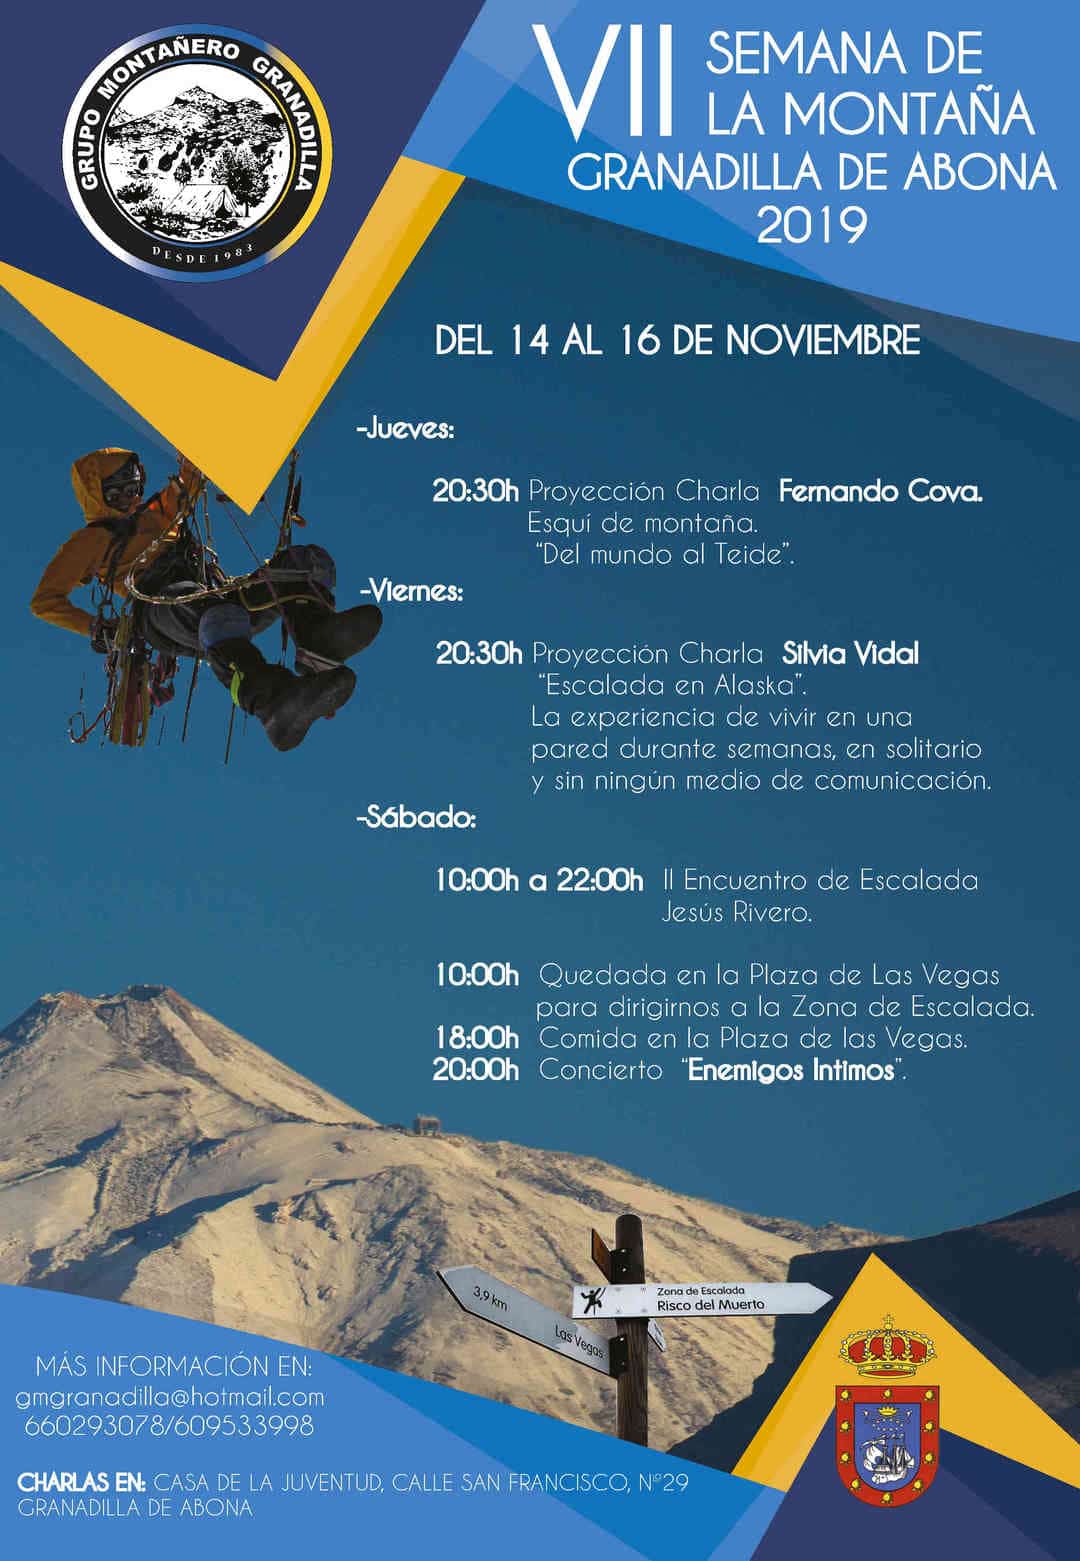 La ‘VII Semana de la Montaña de Granadilla de Abona’, del 14 al 16 de noviembre